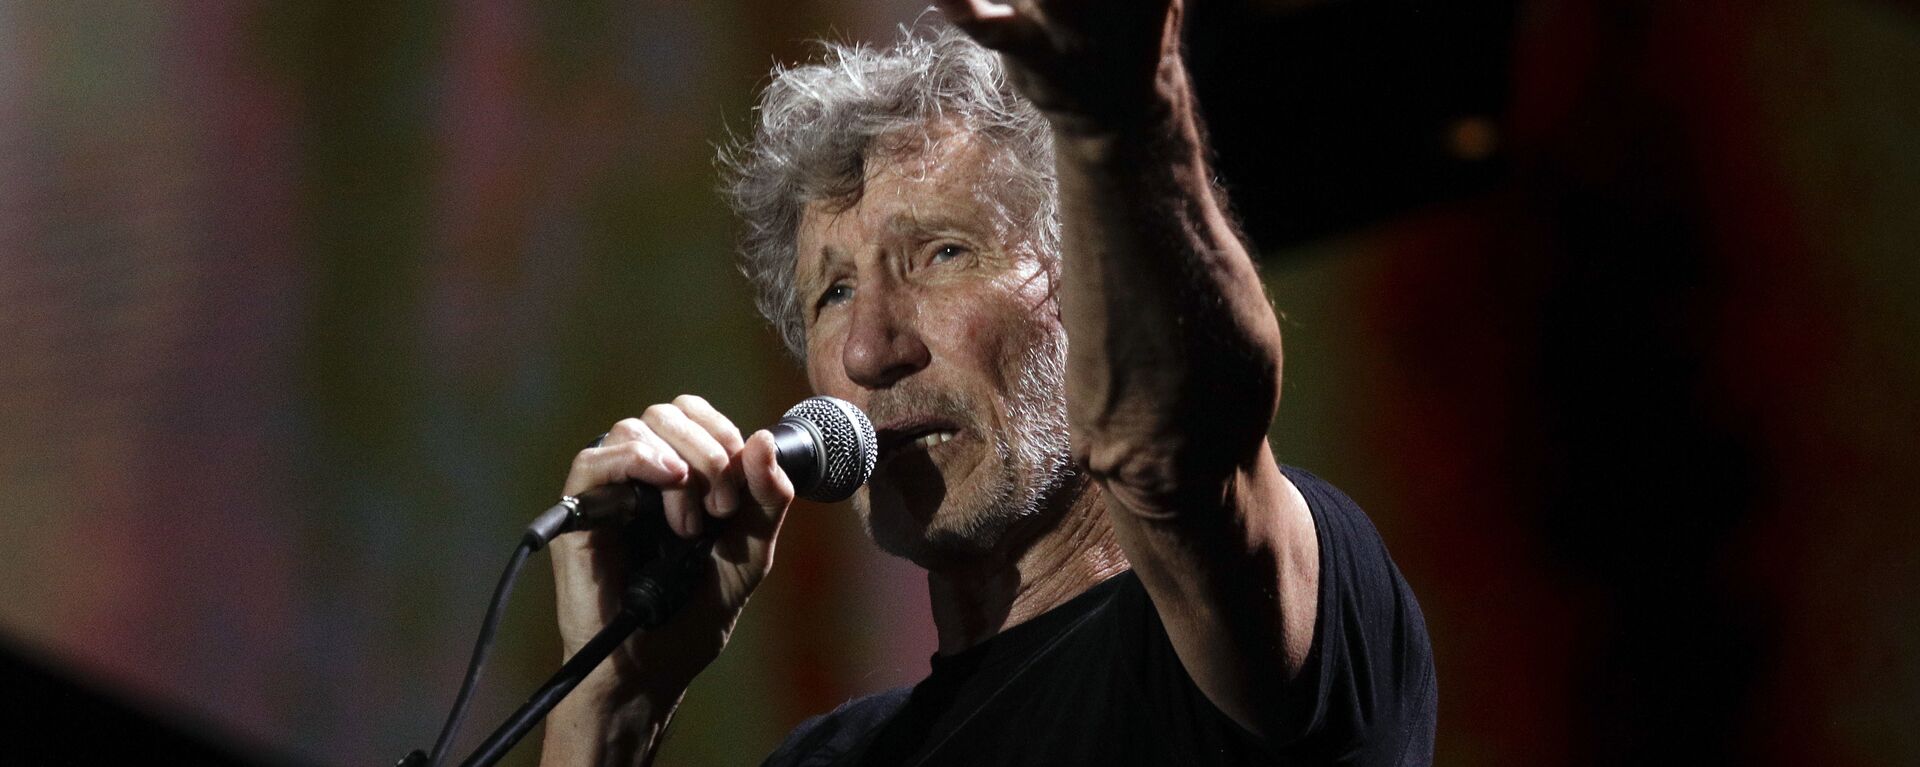 El músico británico Roger Waters - Sputnik Mundo, 1920, 25.03.2019